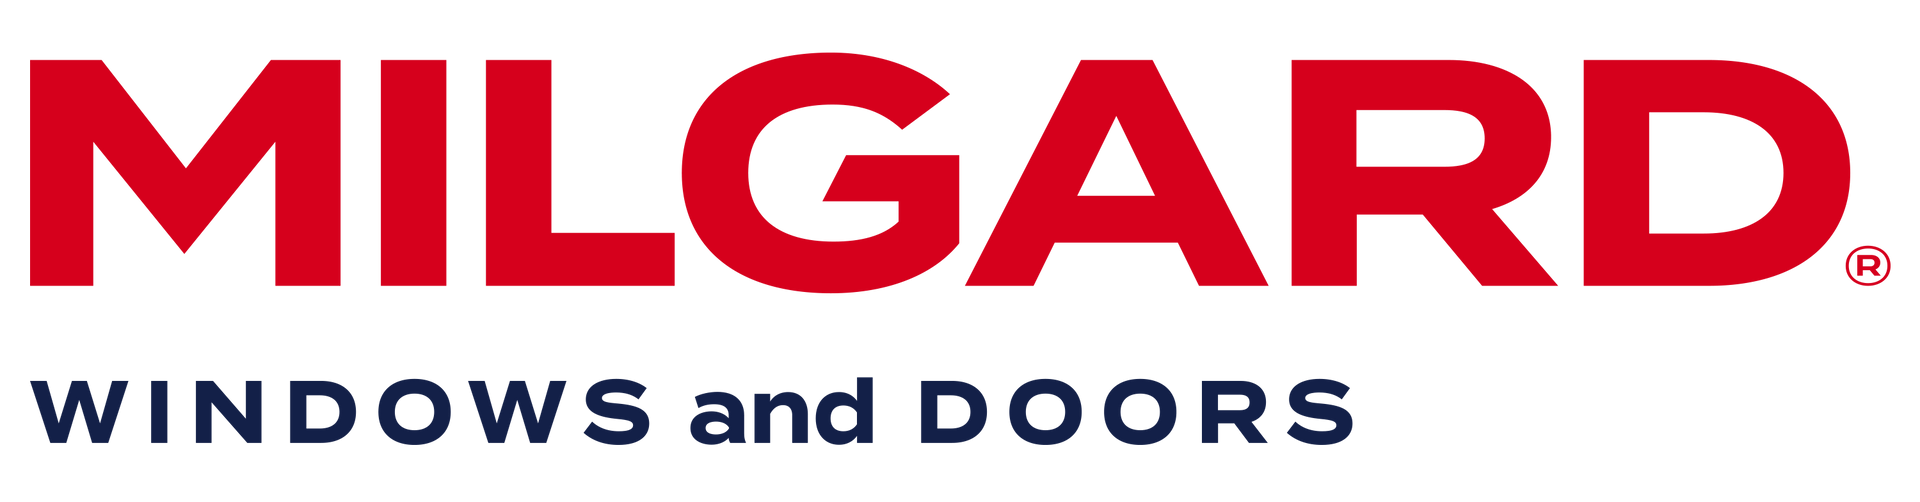 Milgard Window and Door logo